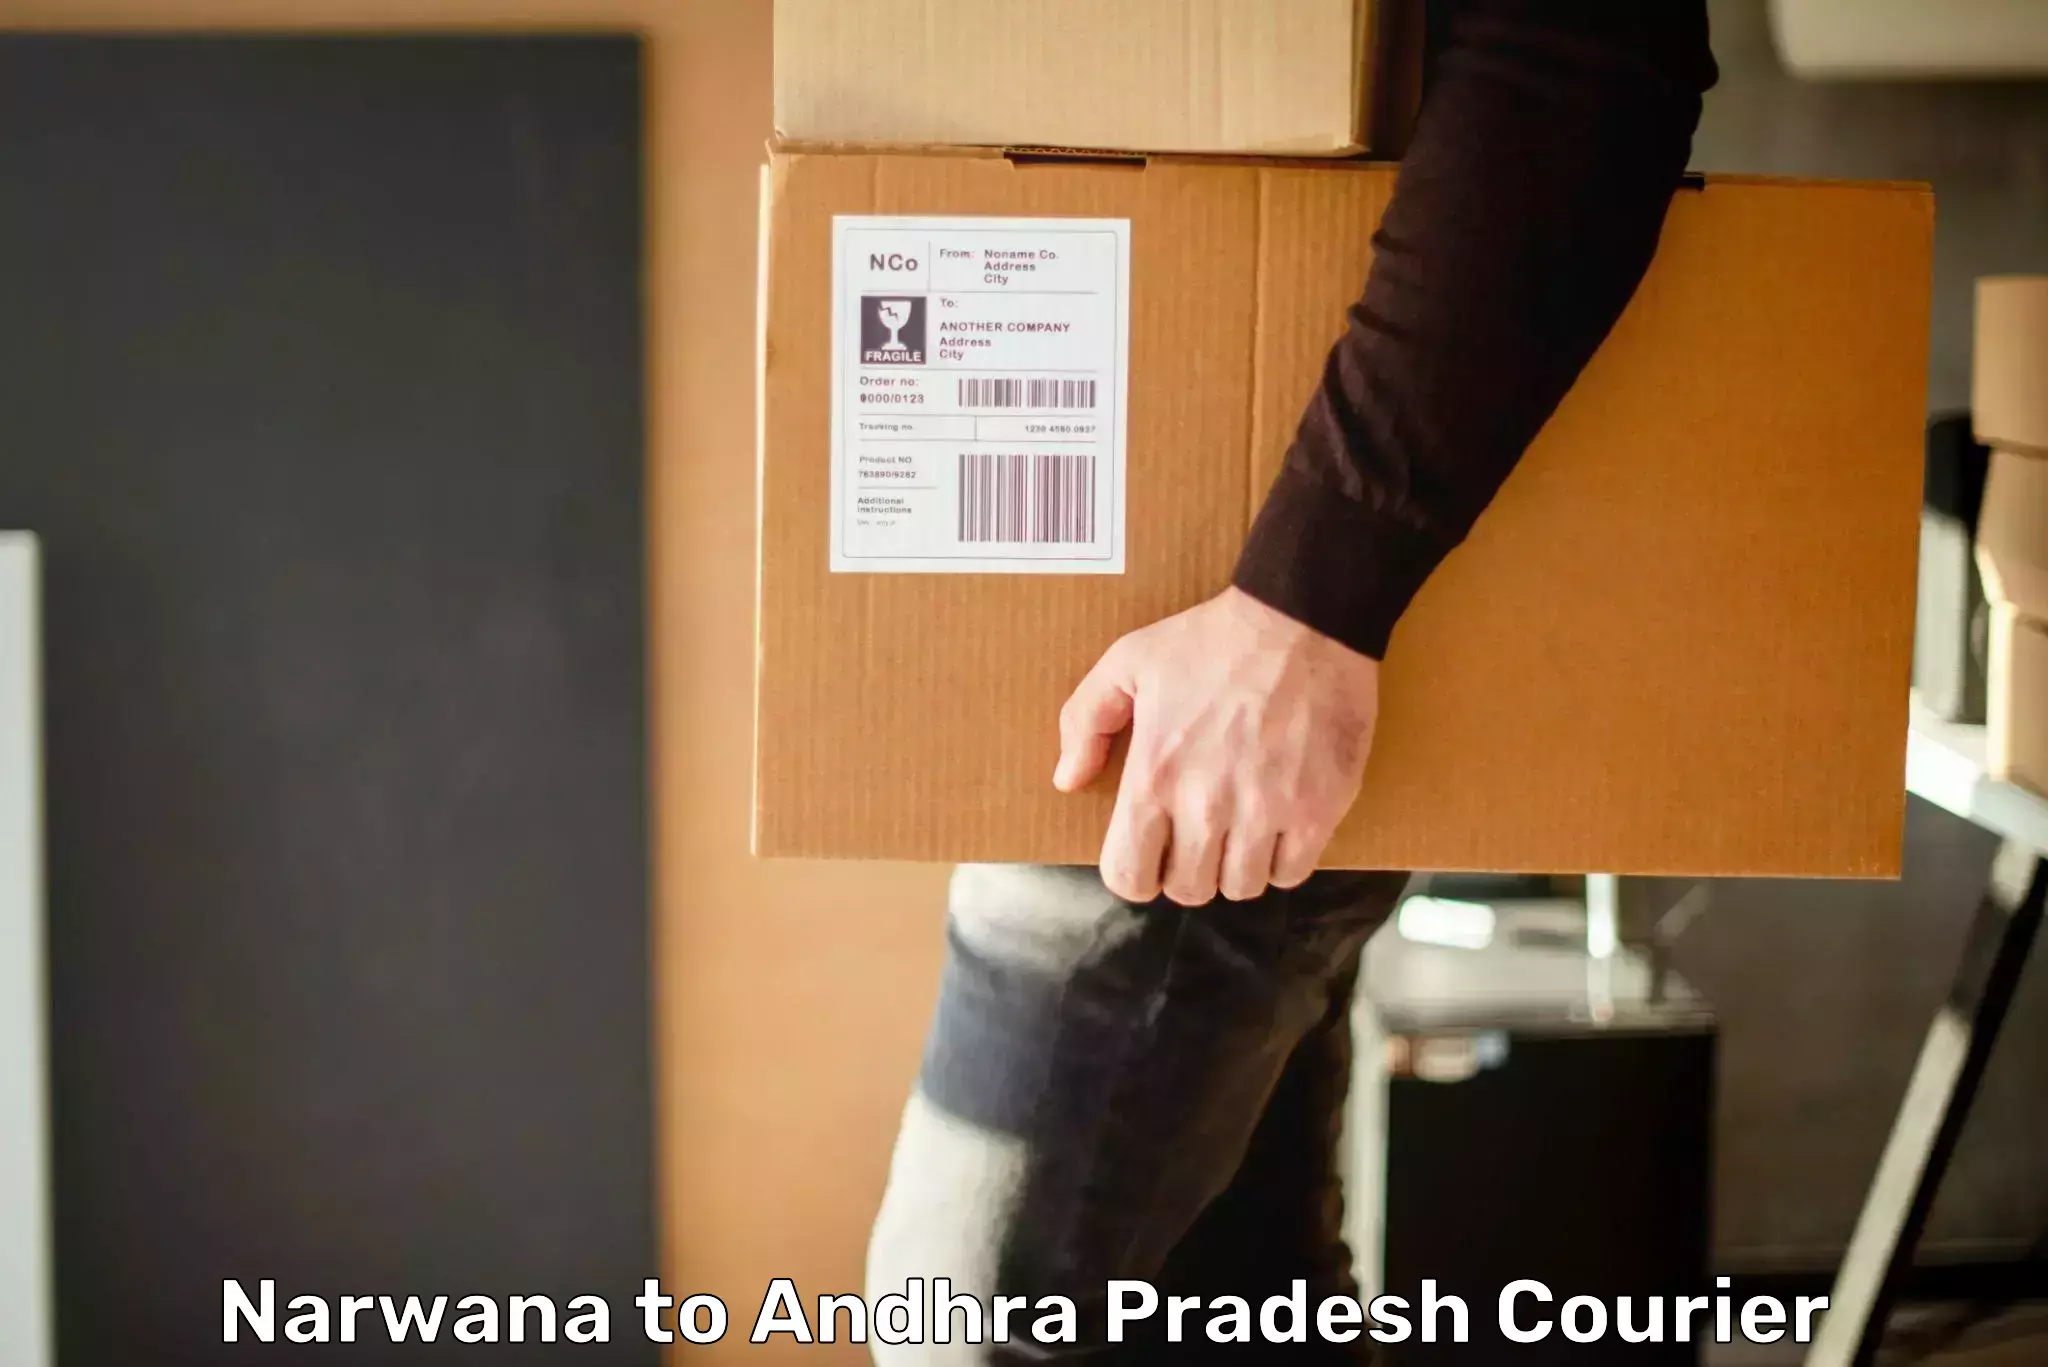 E-commerce logistics support Narwana to Tirupati